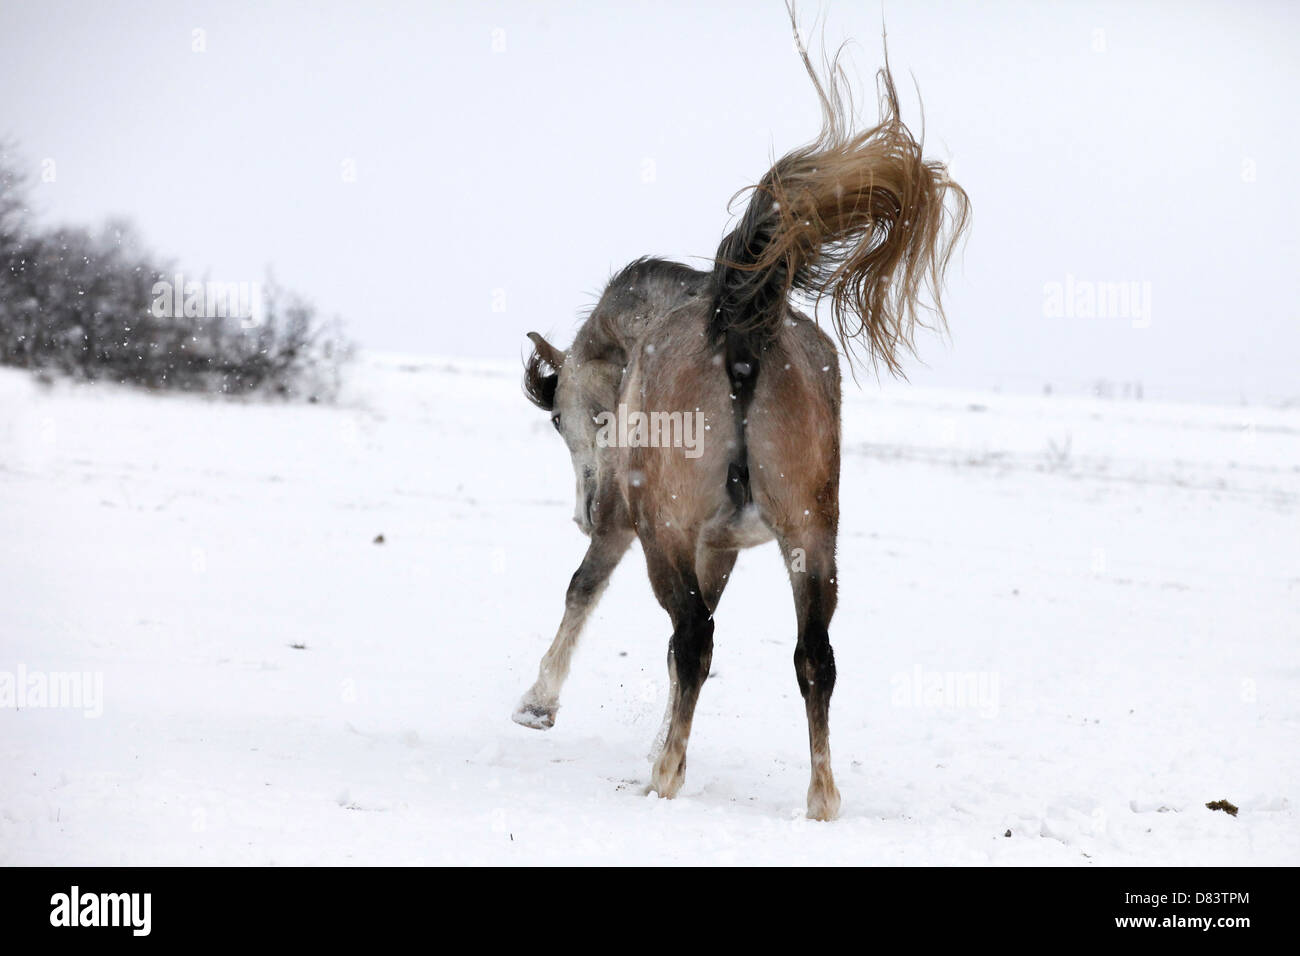 running arabian horse Stock Photo